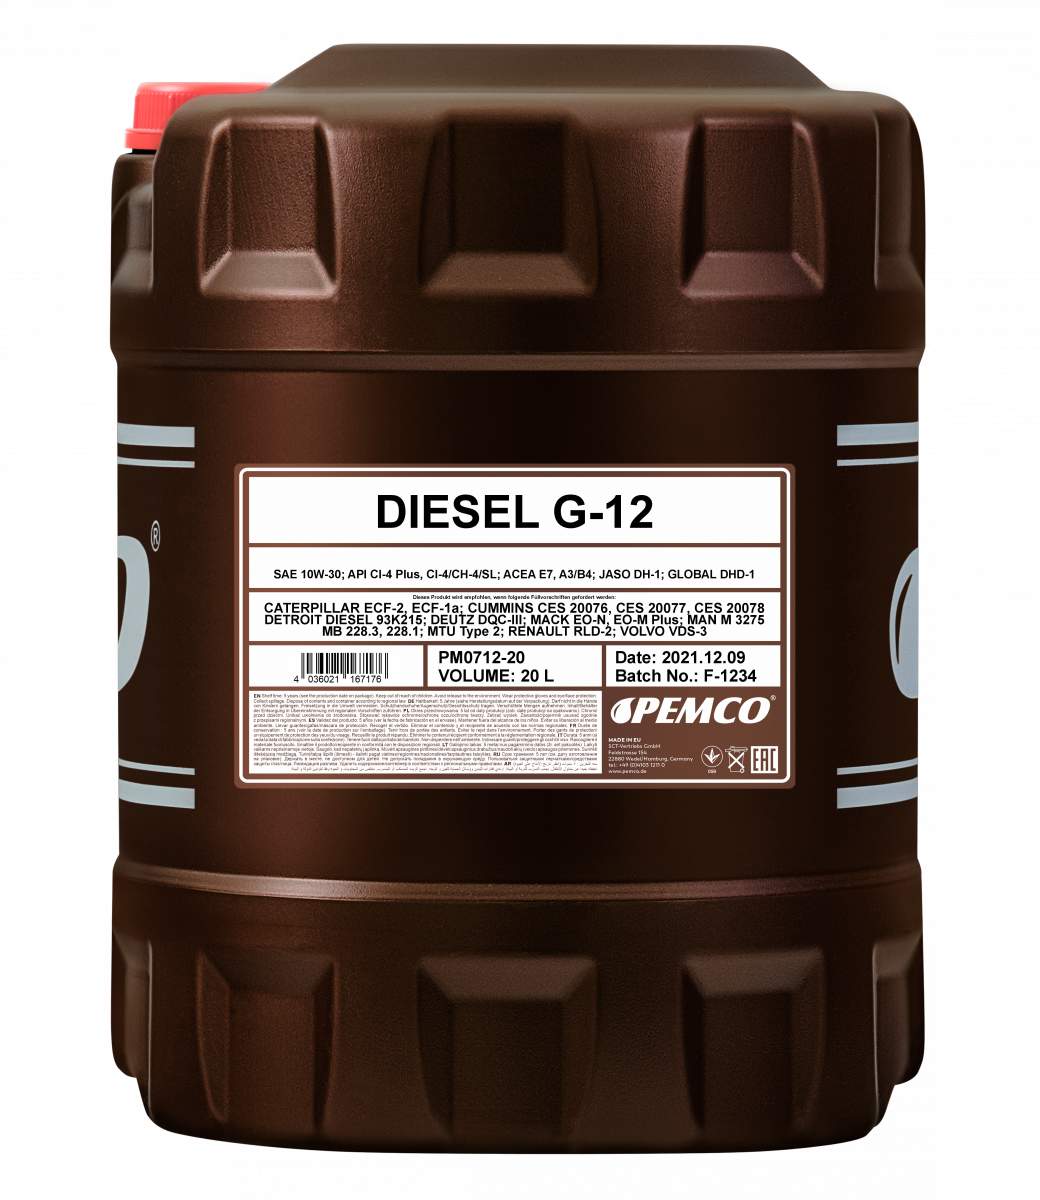 Моторное масло PEMCO DIESEL G-12 SHPD 10W-30 CI-4 Plus/CI-4/CH-4/SL полусинтетическое, 20л (PM0712-20)